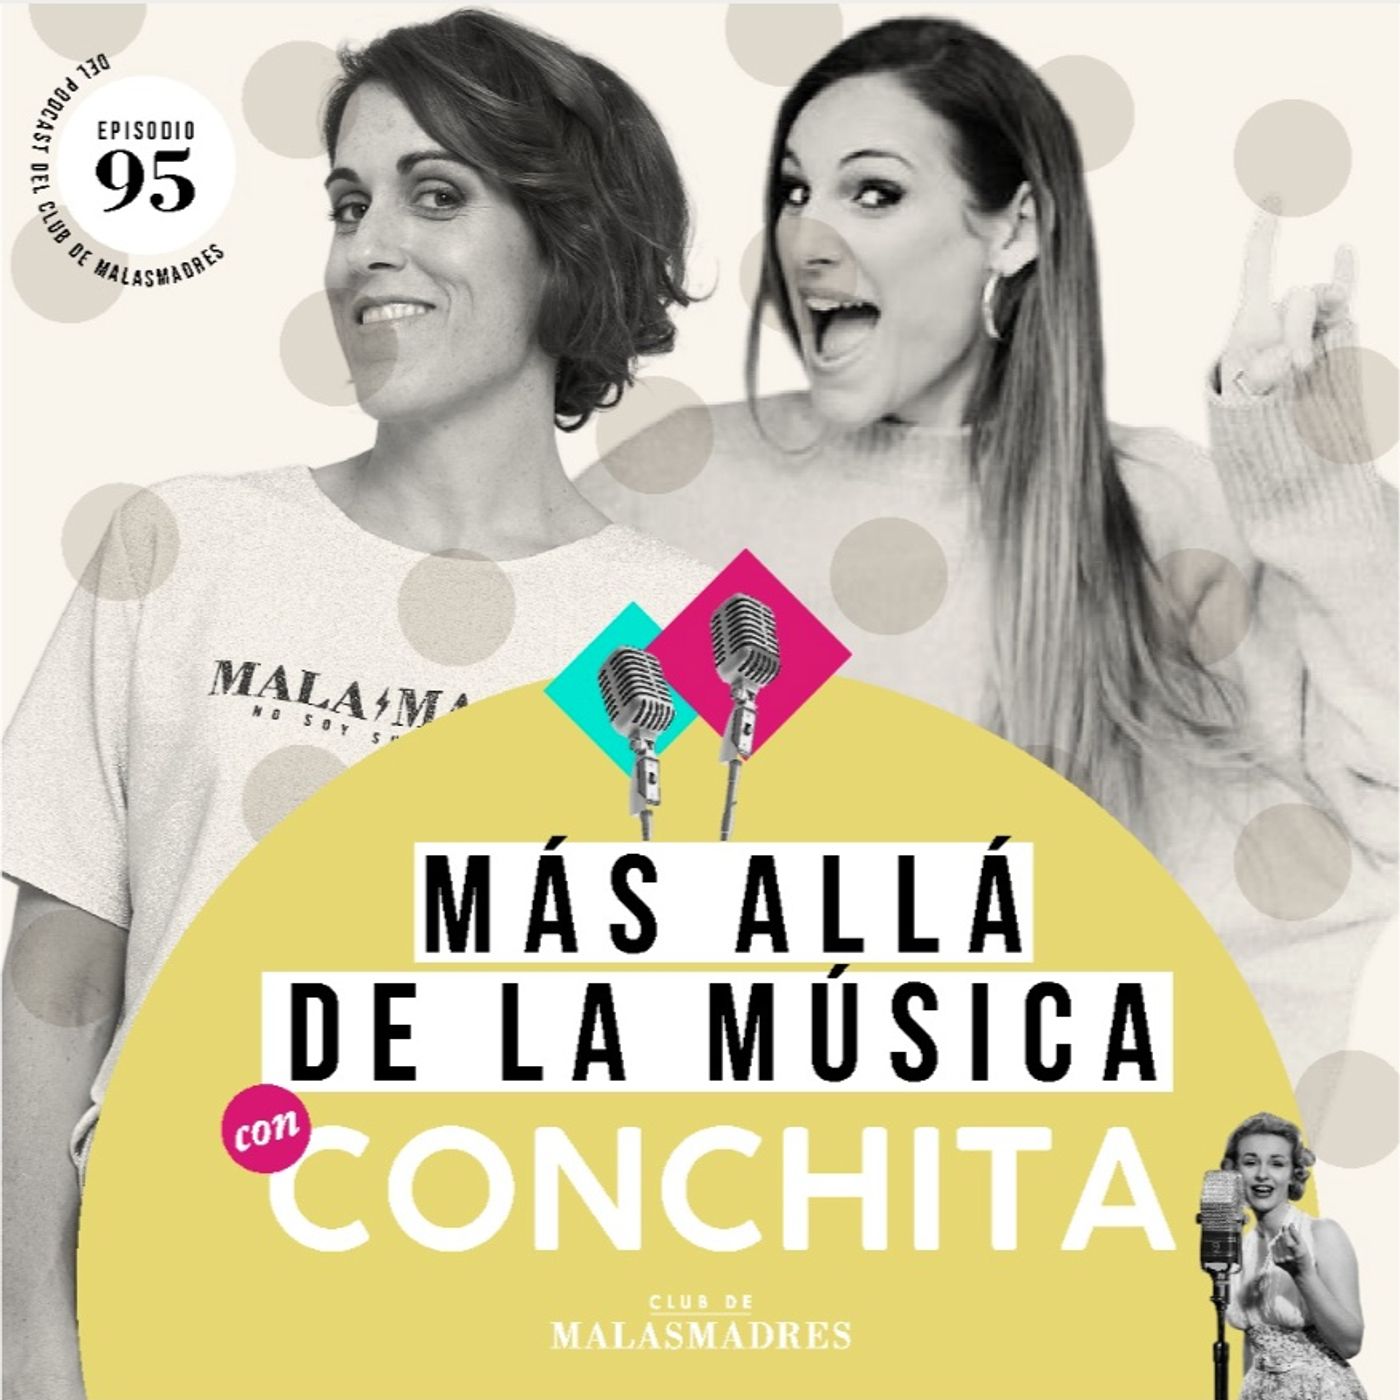 La maternidad y el mundo de la música con la cantante Conchita